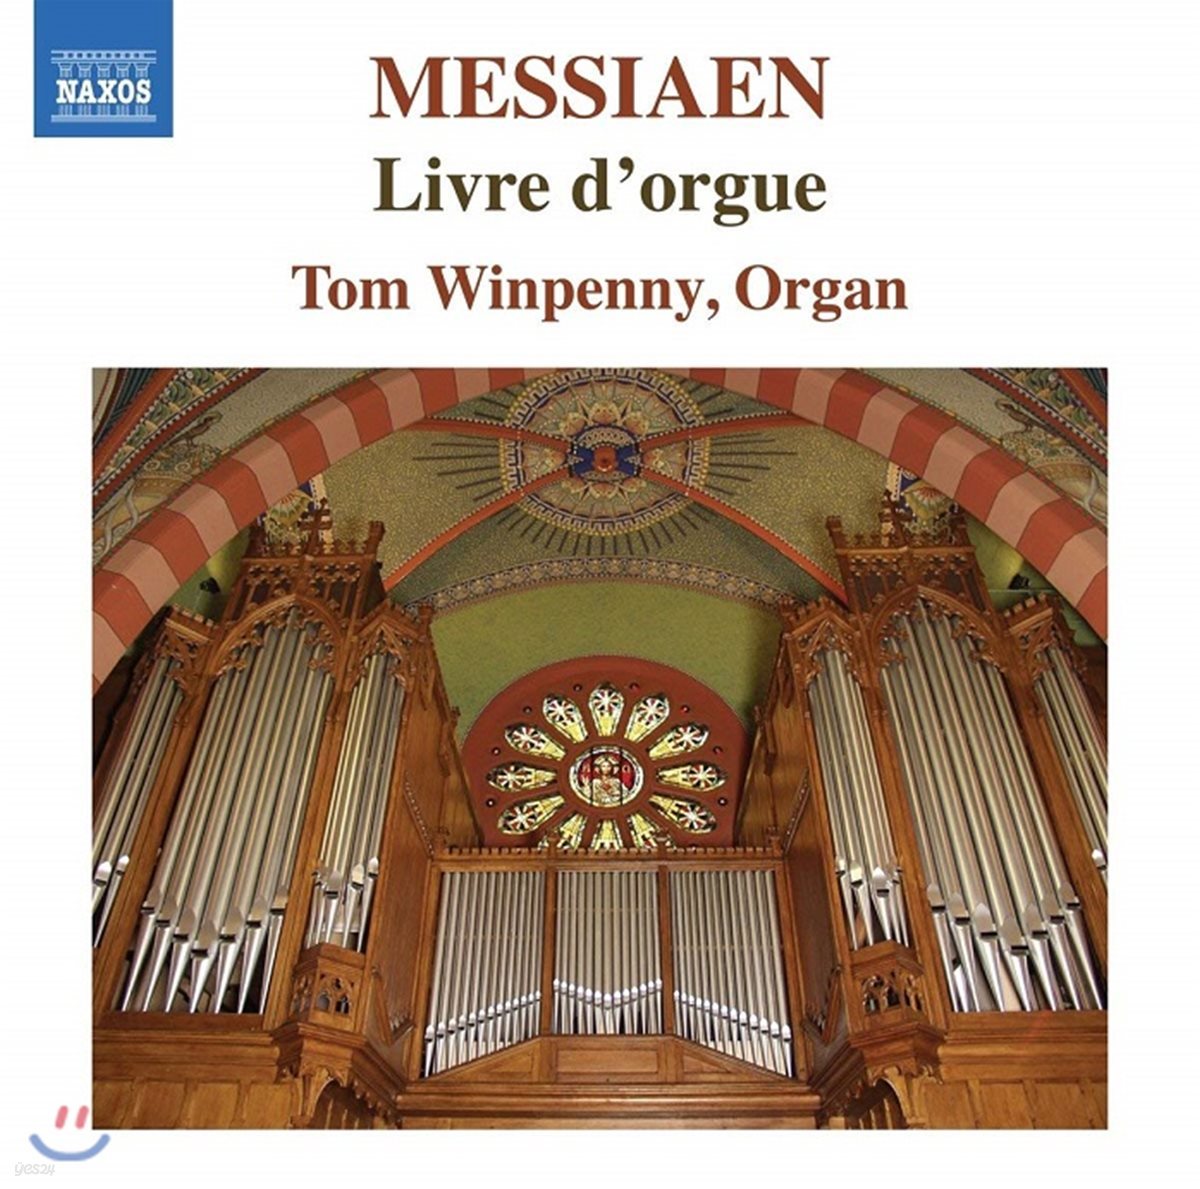 Tom Winpenny 메시앙: 오르간의 서, 헌당식을 위한 창구 [오르간 독주집] (Messiaen: Livre d'Orgue)